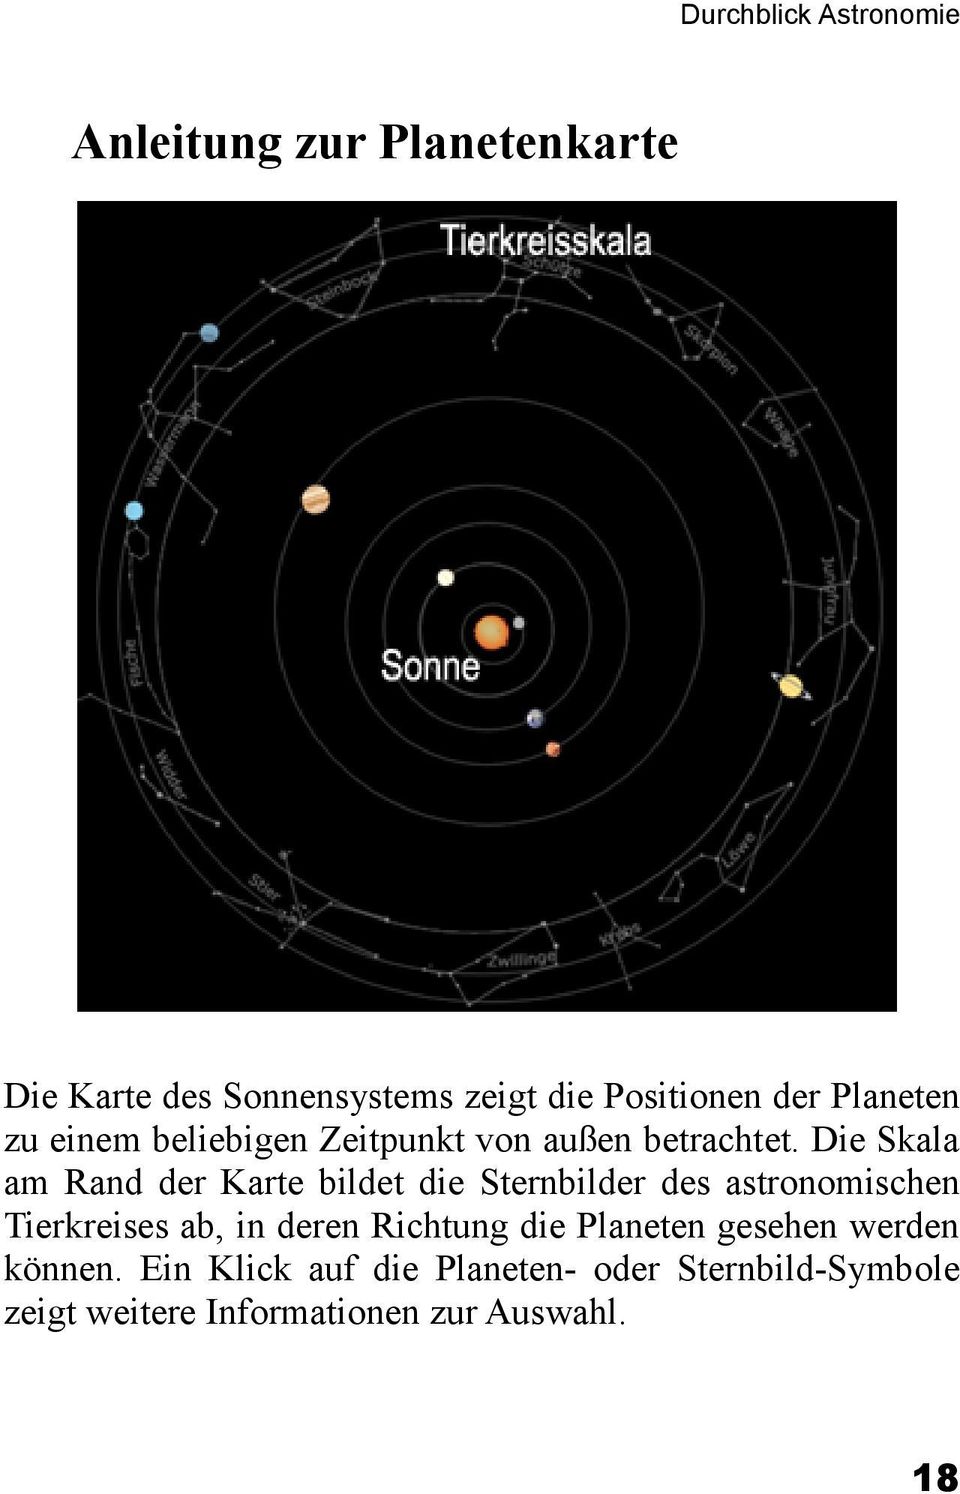 Die Skala am Rand der Karte bildet die Sternbilder des astronomischen Tierkreises ab, in